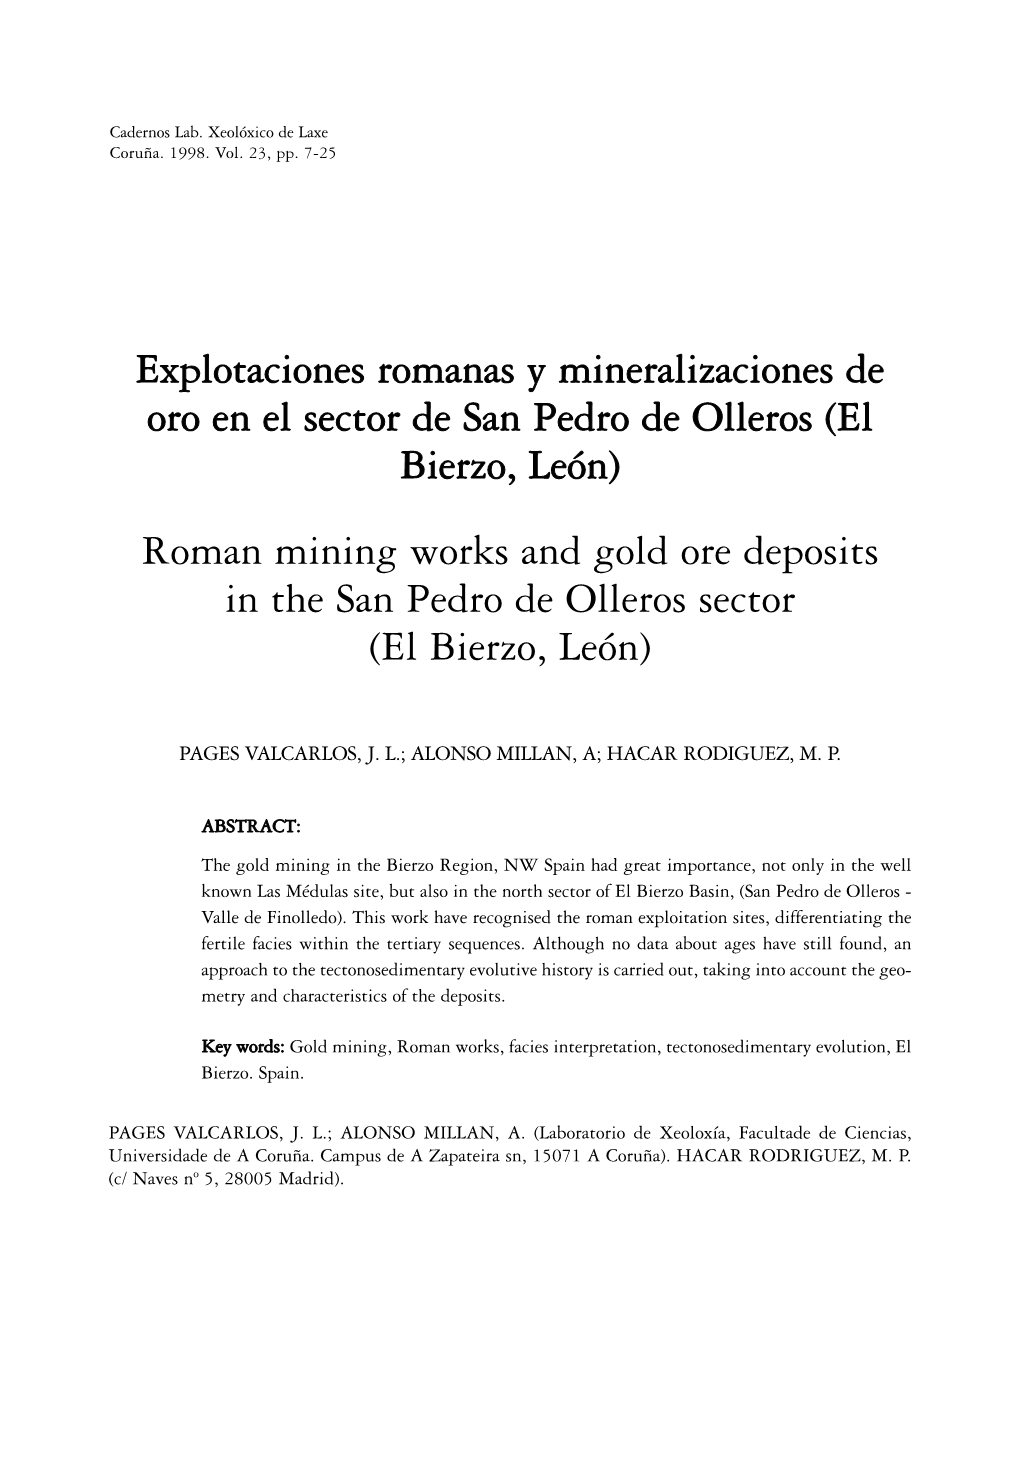 El Bierzo, León) Roman Mining Works and Gold Ore Deposits in the San Pedro De Olleros Sector (El Bierzo, León)